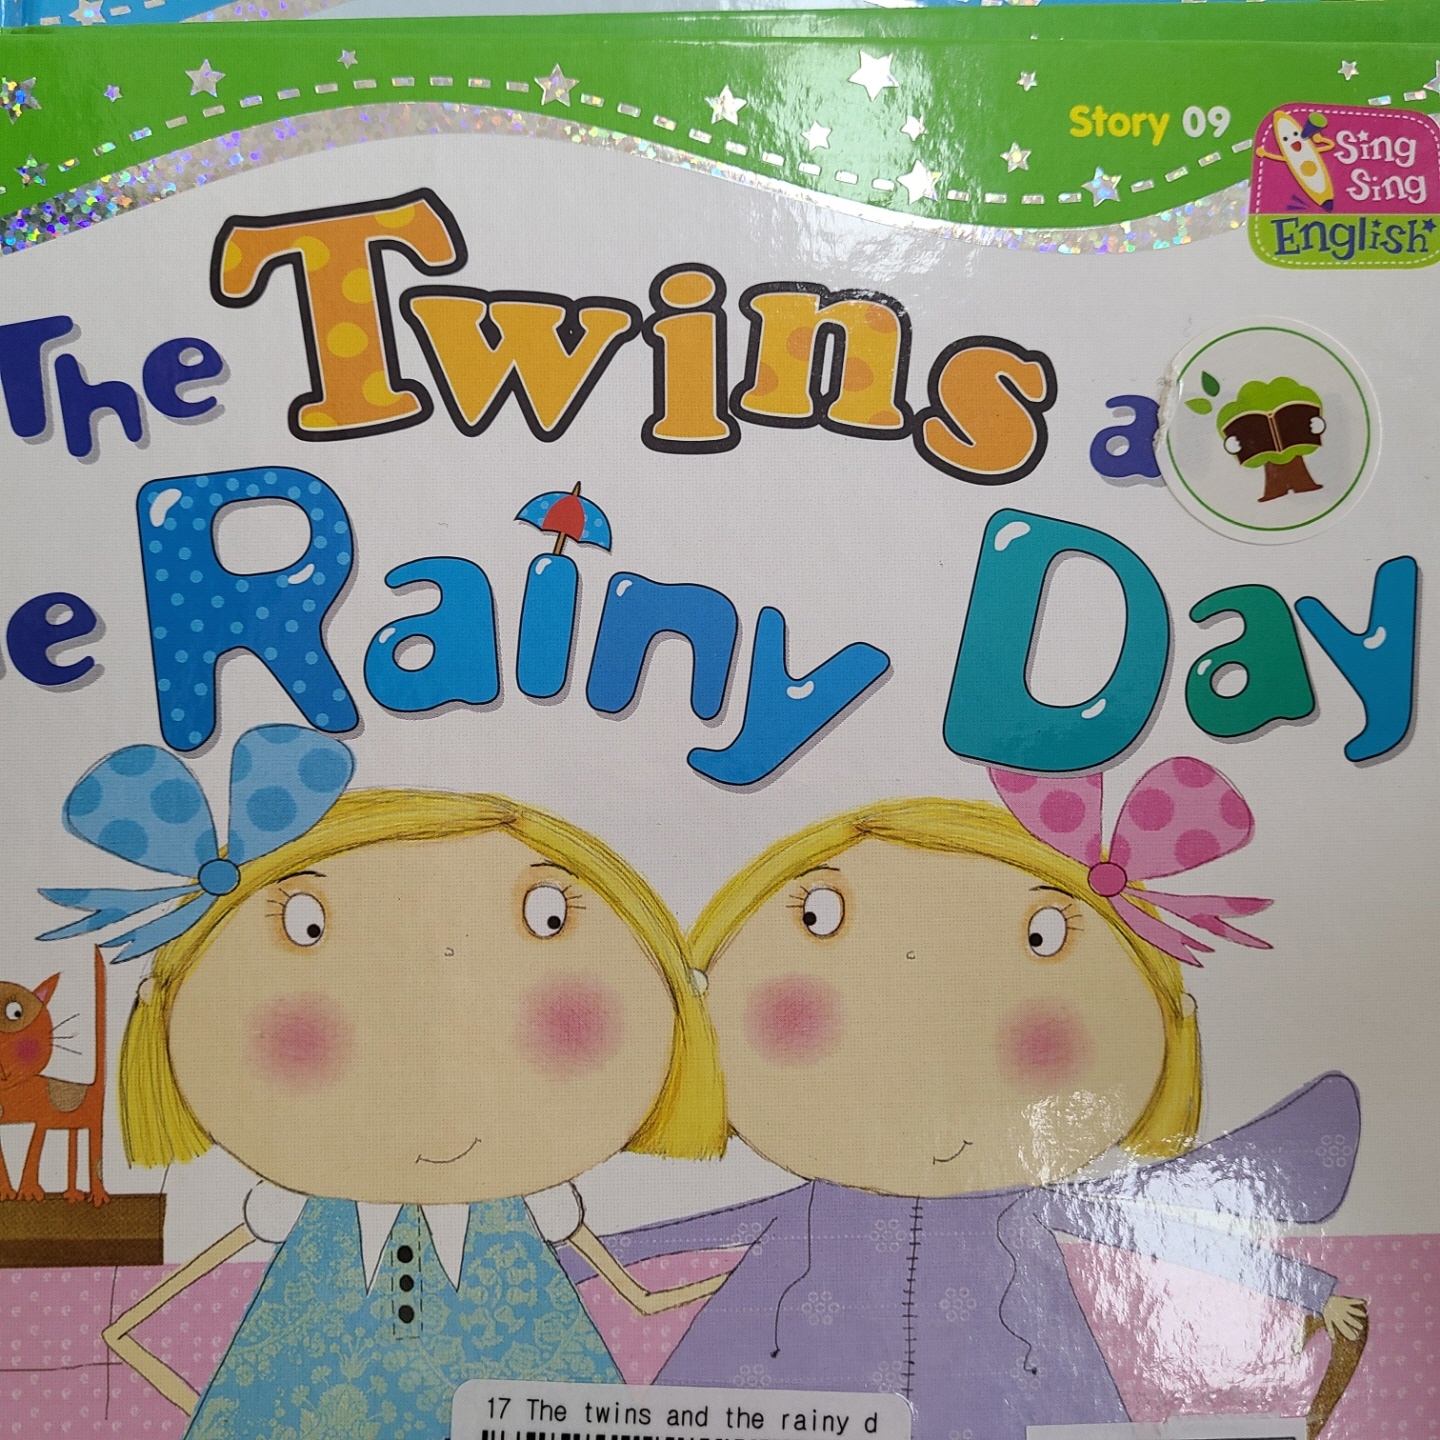 씽씽 영어 Story 09 The Twins and the Rainy Day